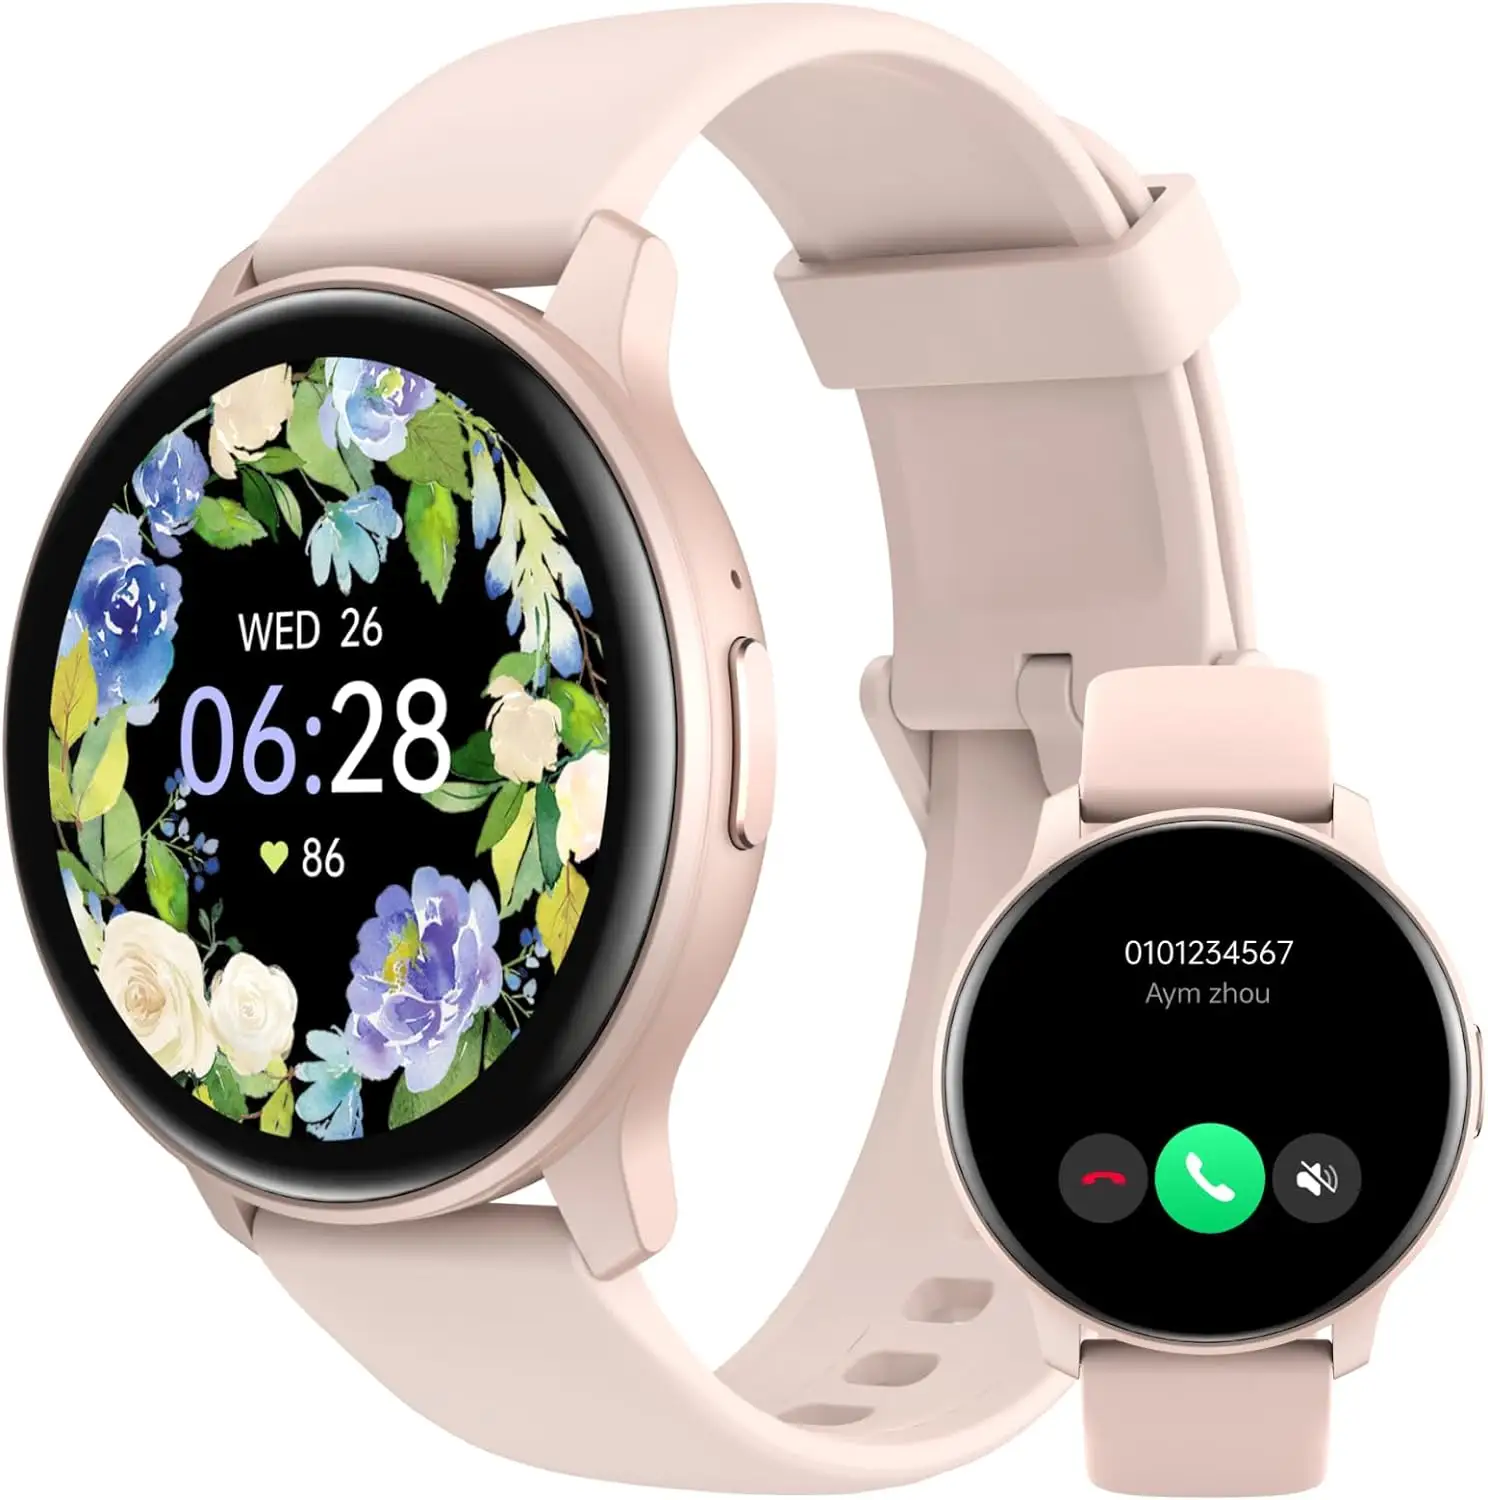 Relógio inteligente para mulheres e homens, smartwatch inteligente para celular, iPhone, Samsung, Android, frequência cardíaca, sono, círculo IP68